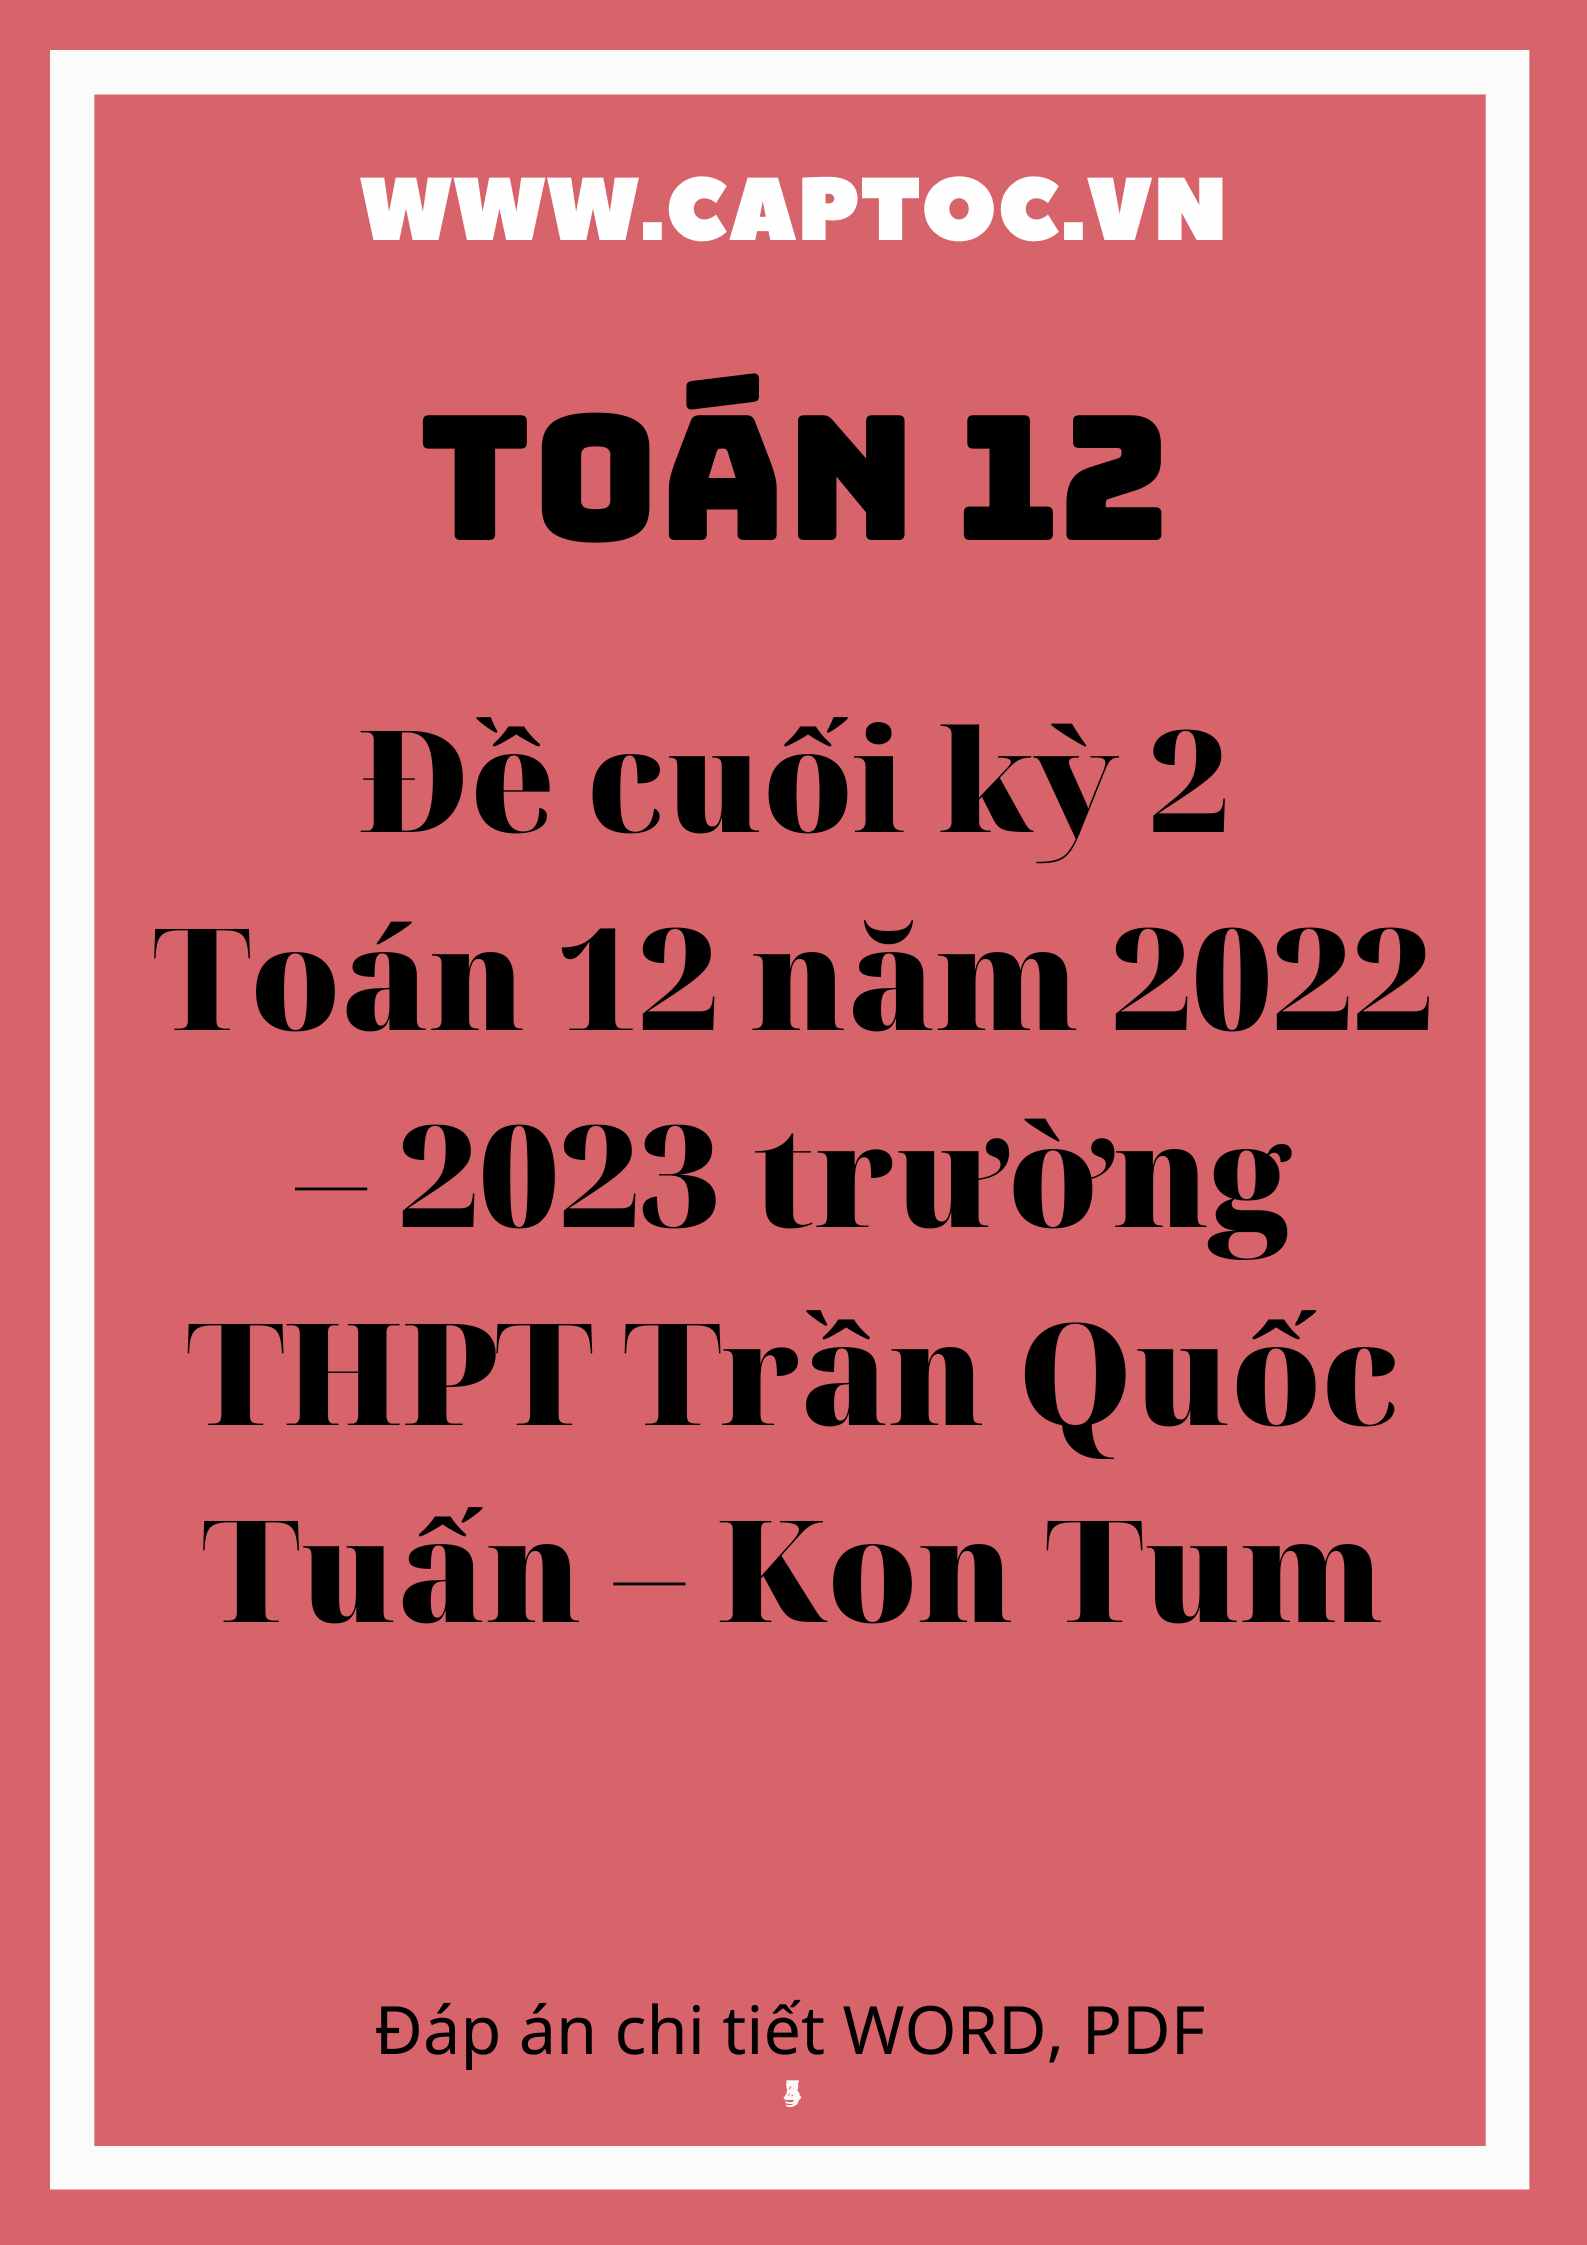 Đề cuối kỳ 2 Toán 12 năm 2022 – 2023 trường THPT Trần Quốc Tuấn – Kon Tum